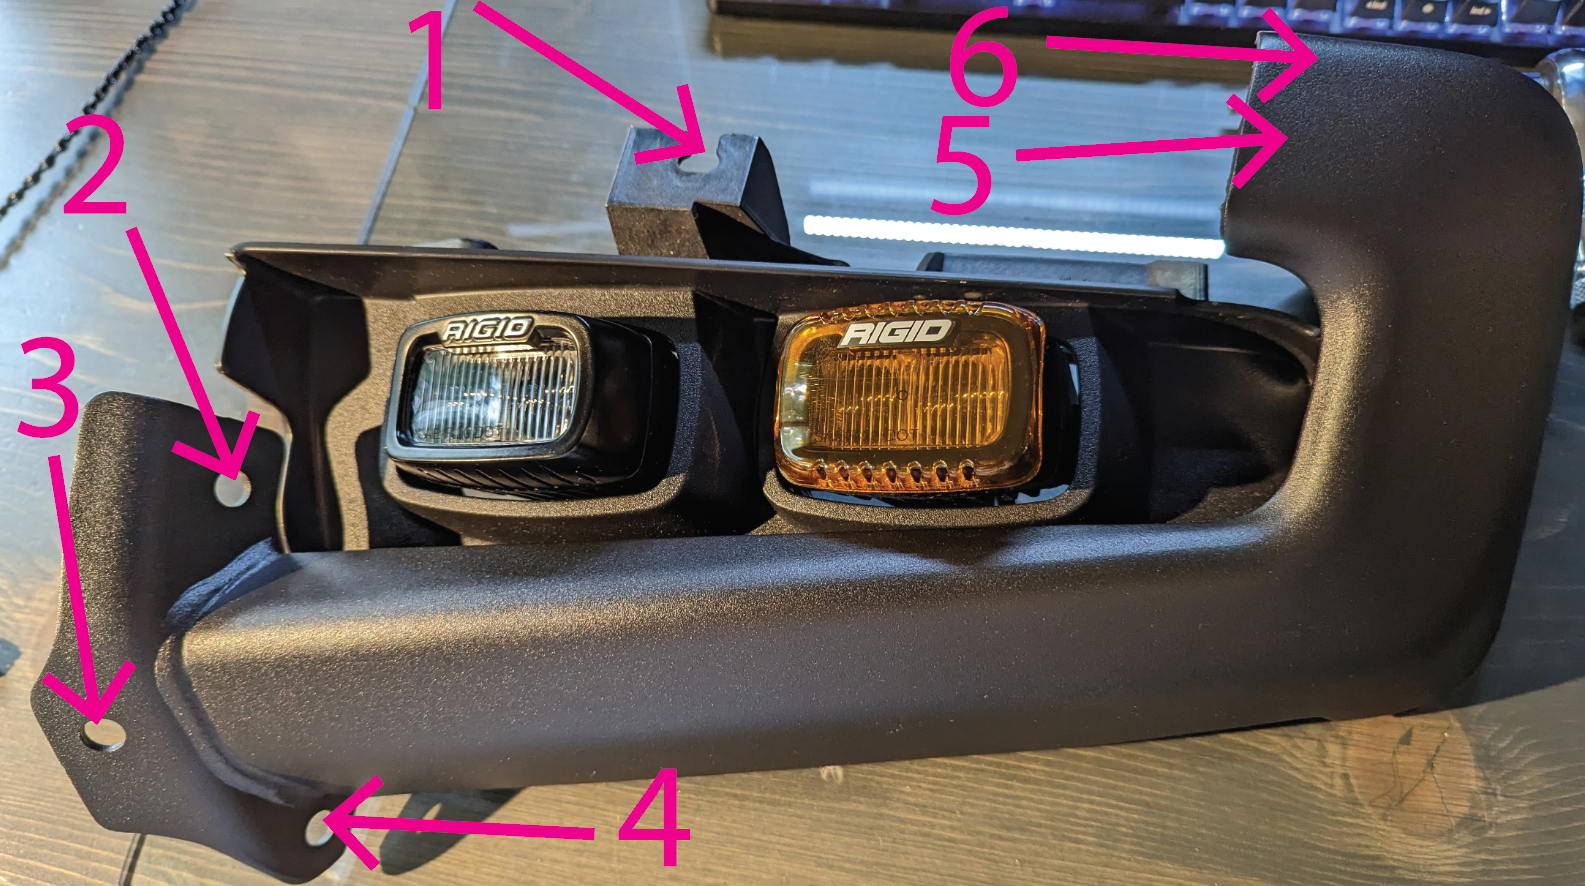 Ford Bronco Raptor fog lights - part #'s for install on regular Bronco? 1681941611546